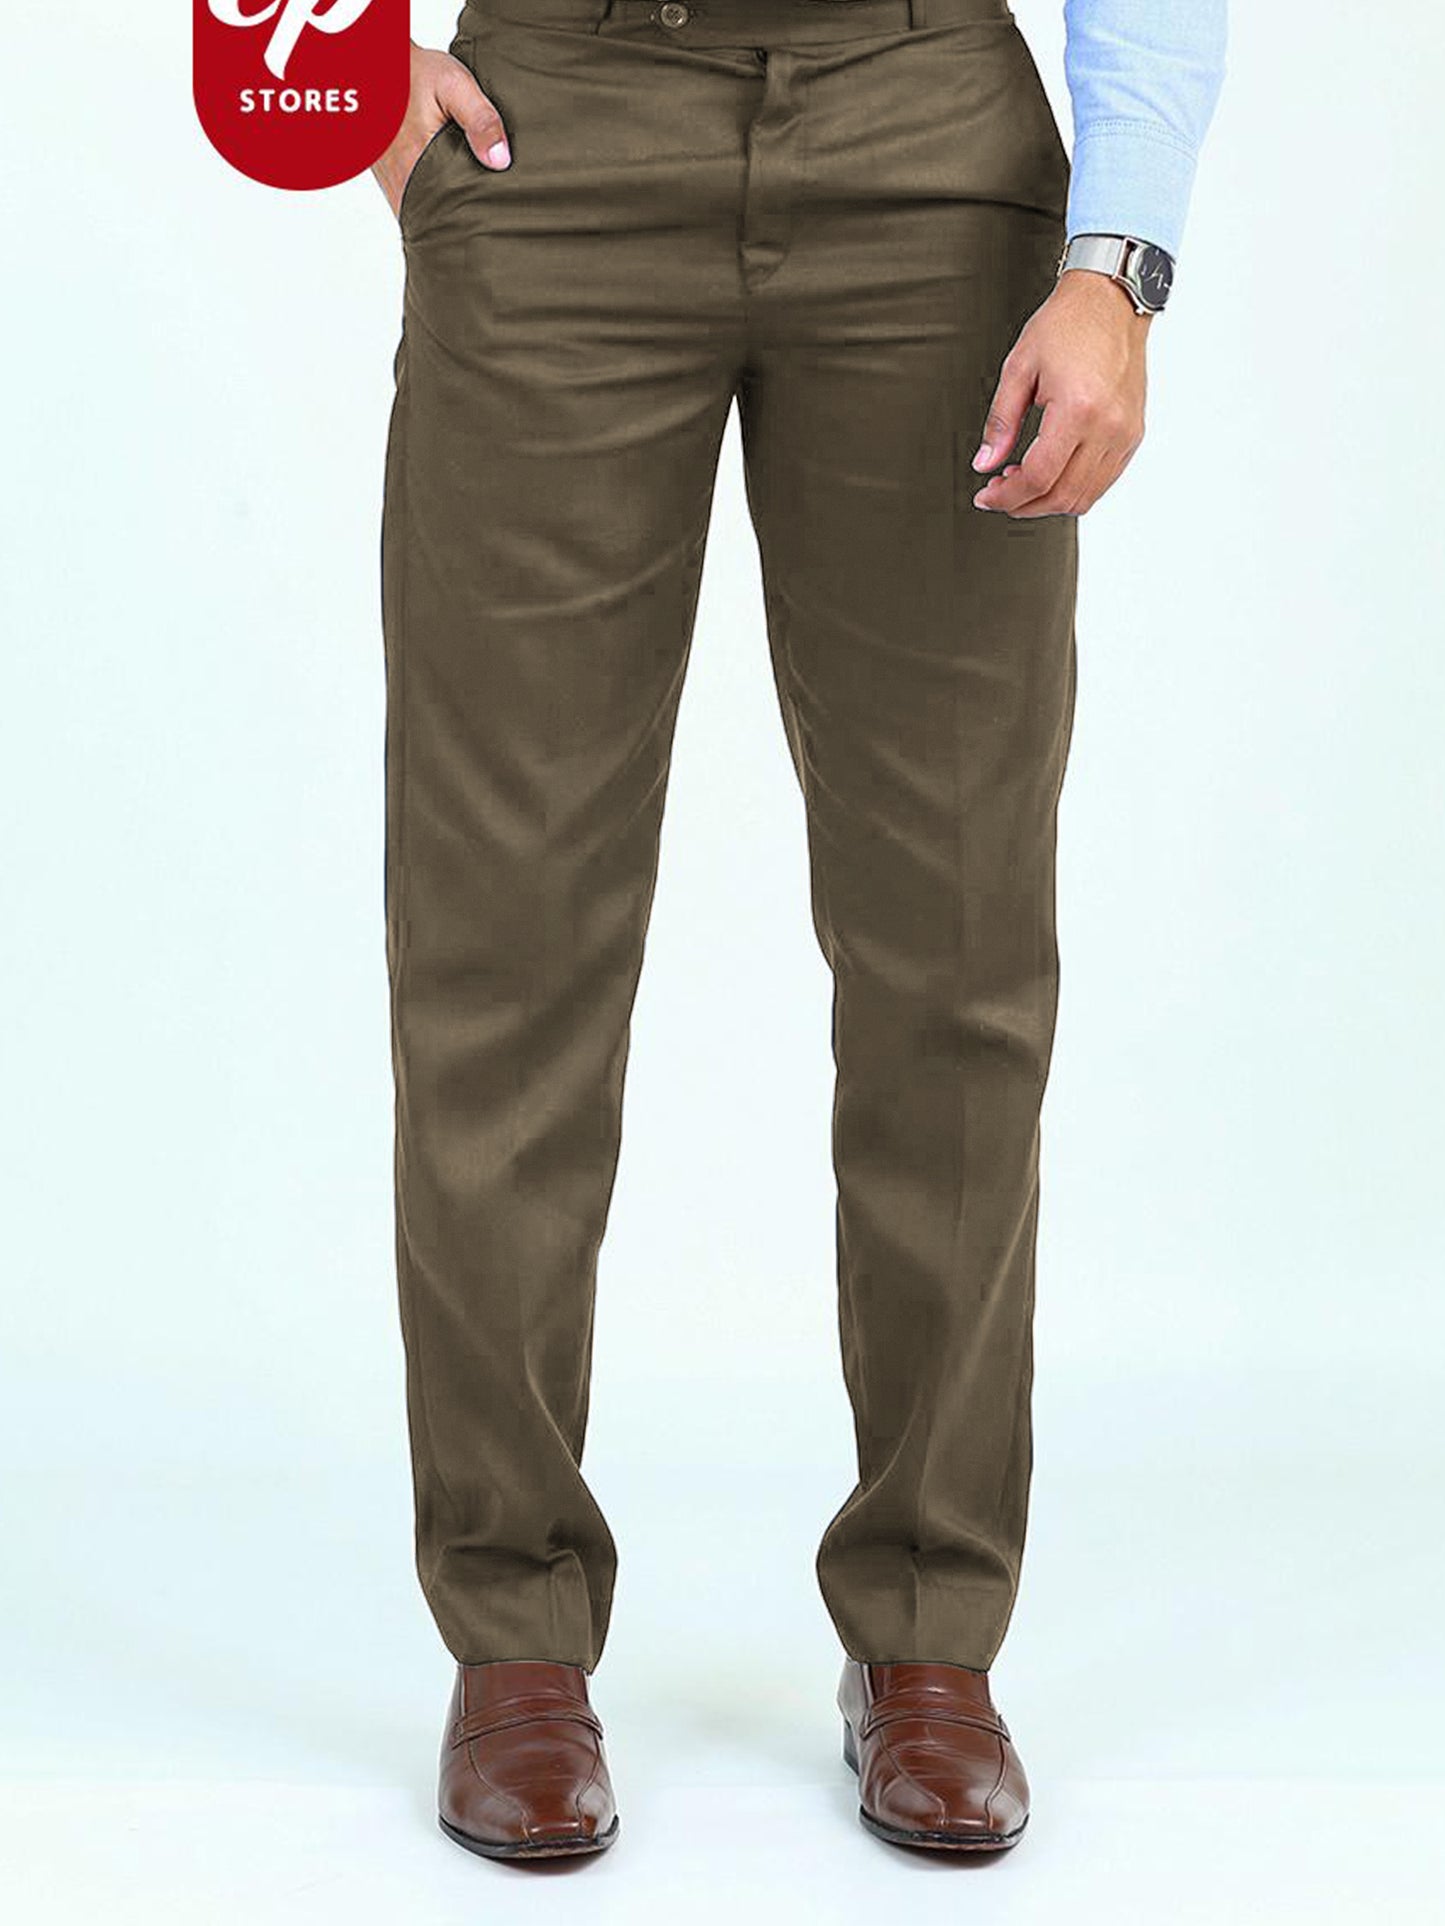 SN Men's Dress Pant Trouser Formal Cobra Brown – The Cut Price